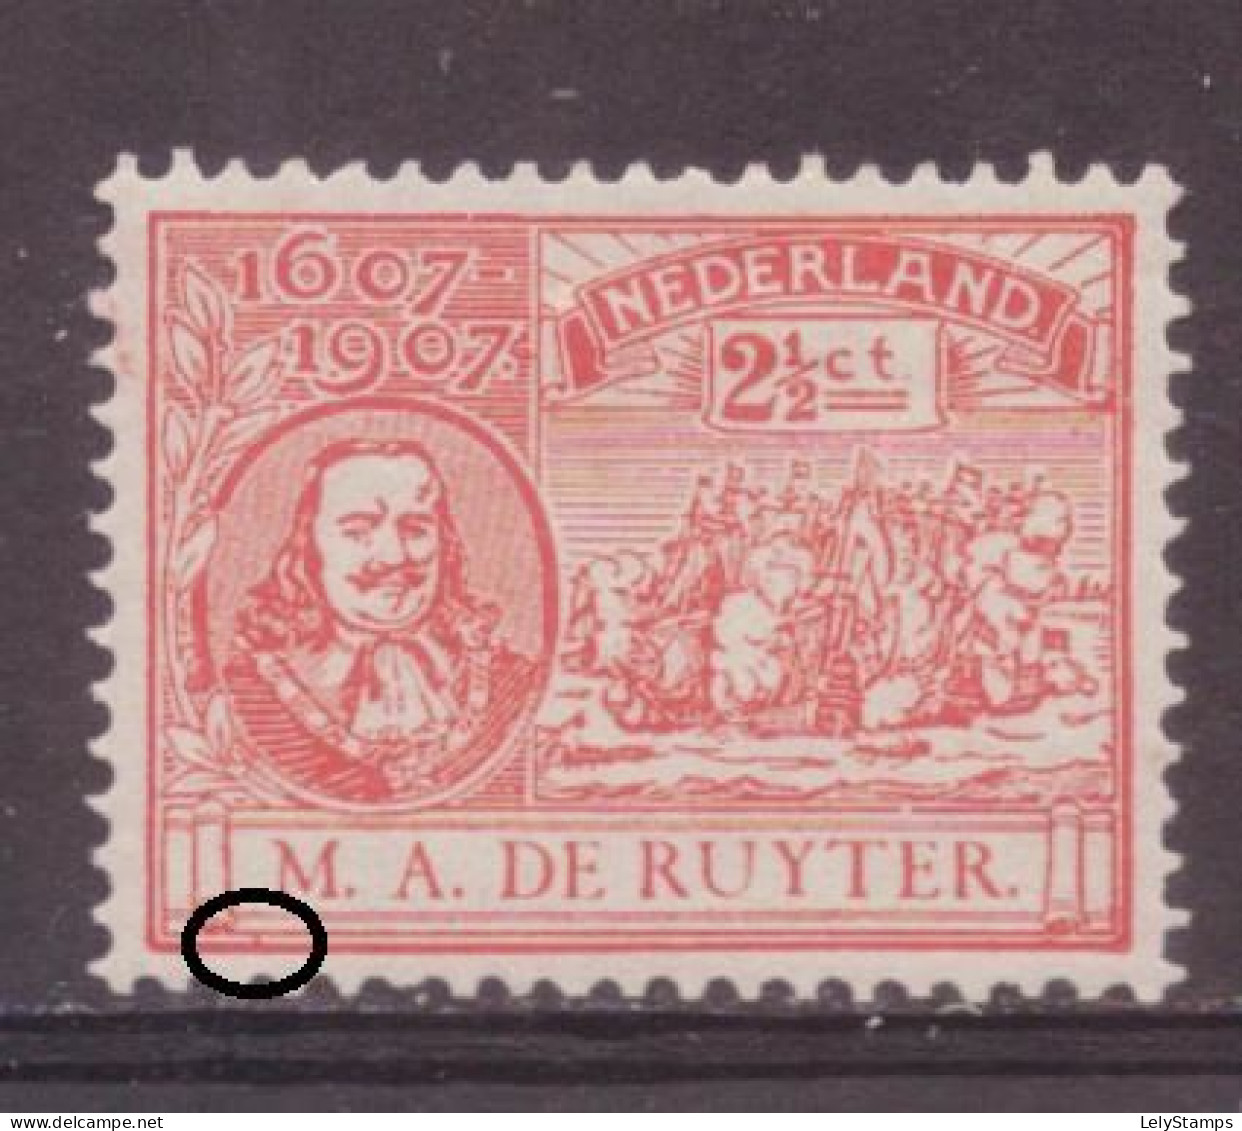 Nederland / Niederlande / Pays Bas NVPH 89 P Plaatfout Plate Error MH * (1907) - Abarten Und Kuriositäten